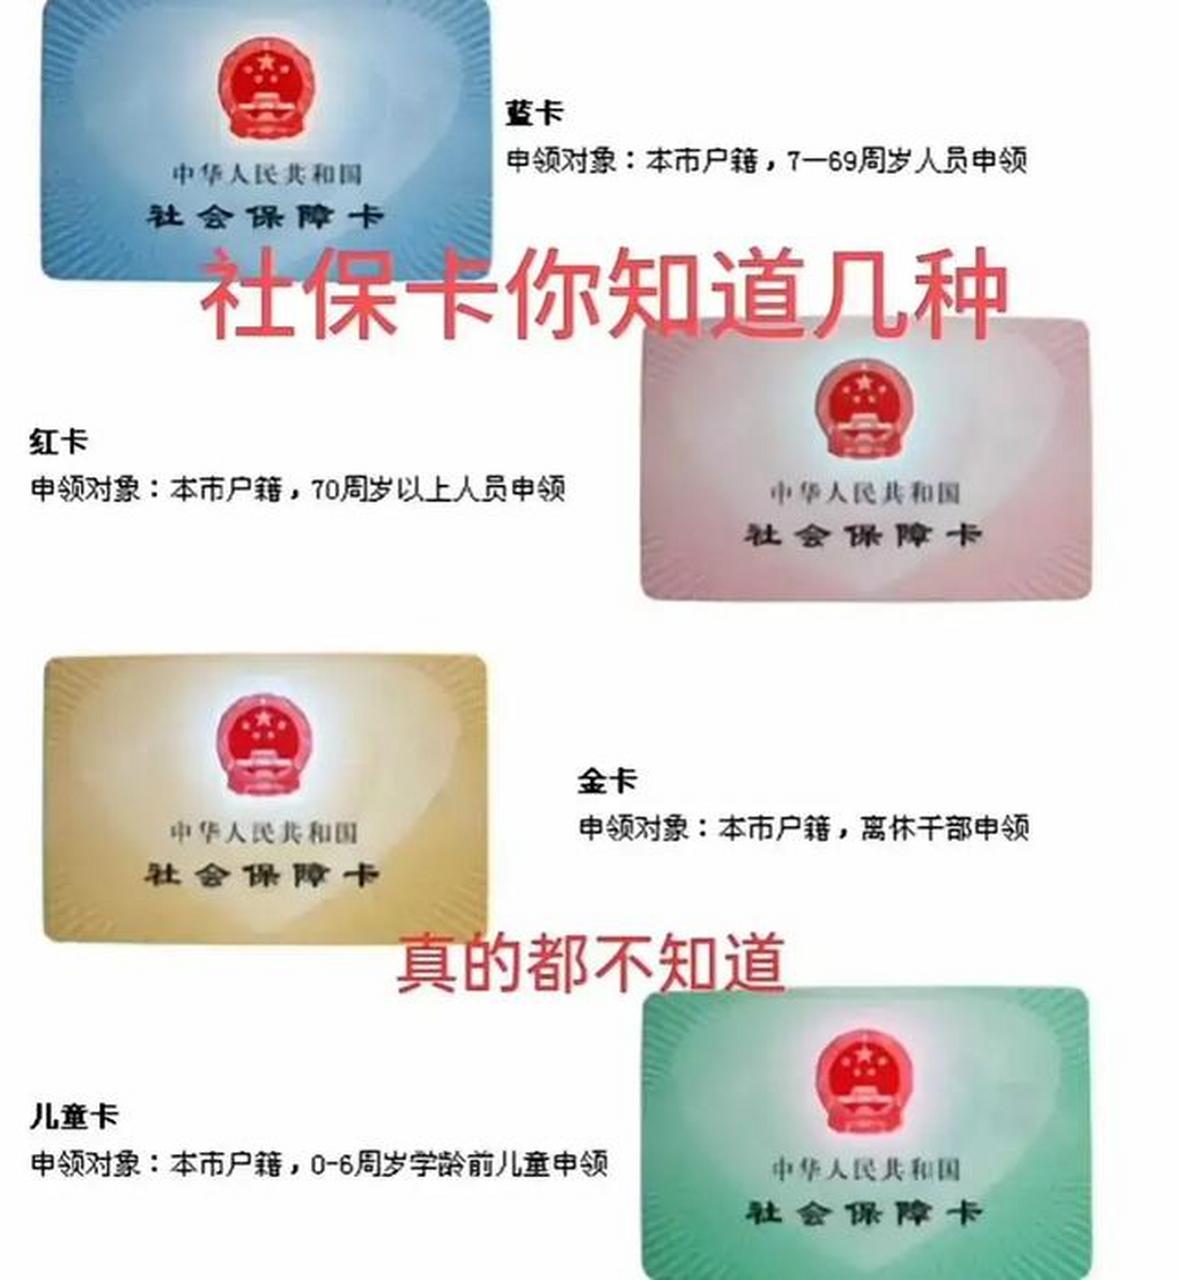 上海社保卡的分类如下 1蓝卡申领对象:本市户籍,7—69周岁人员申领